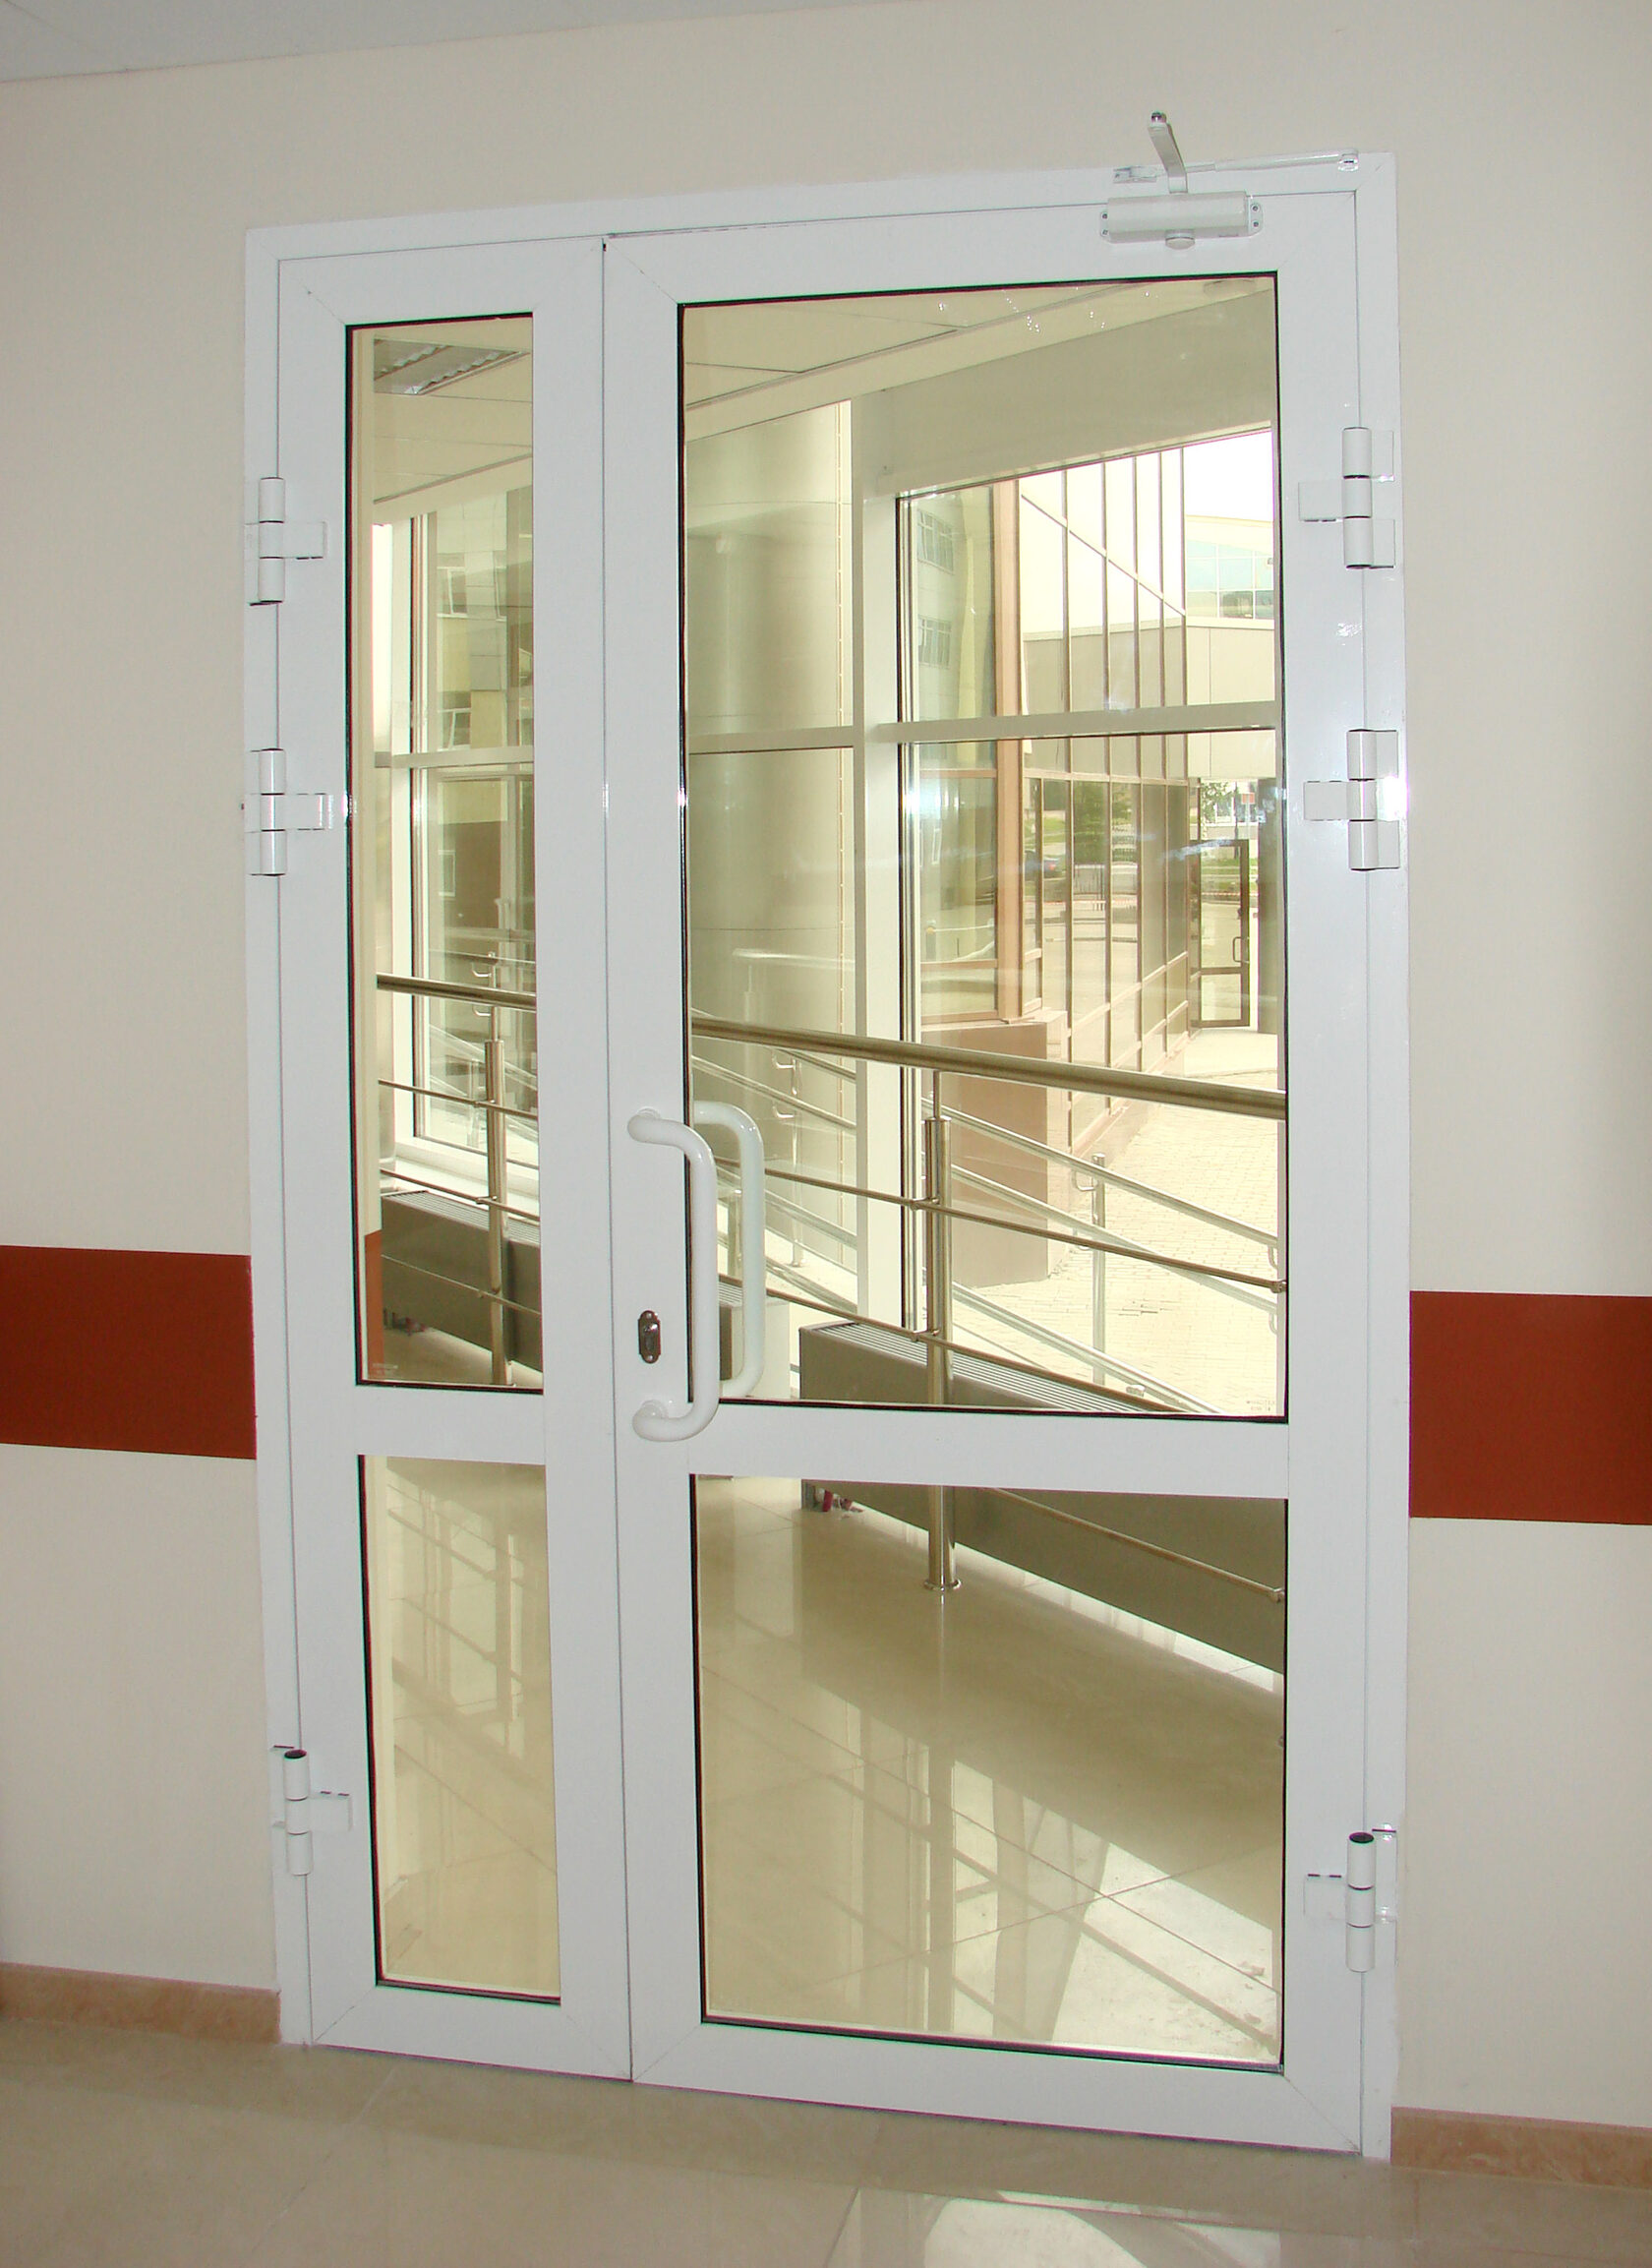 Двери пвх со стеклом цена. Дверной блок алюминиевый остекленный двупольный. Алюминиевая дверь со стеклом EIWS 30 противопожарная. Дверь противопожарная стеклянная EIW 30. Противопожарные двери EIW 30.